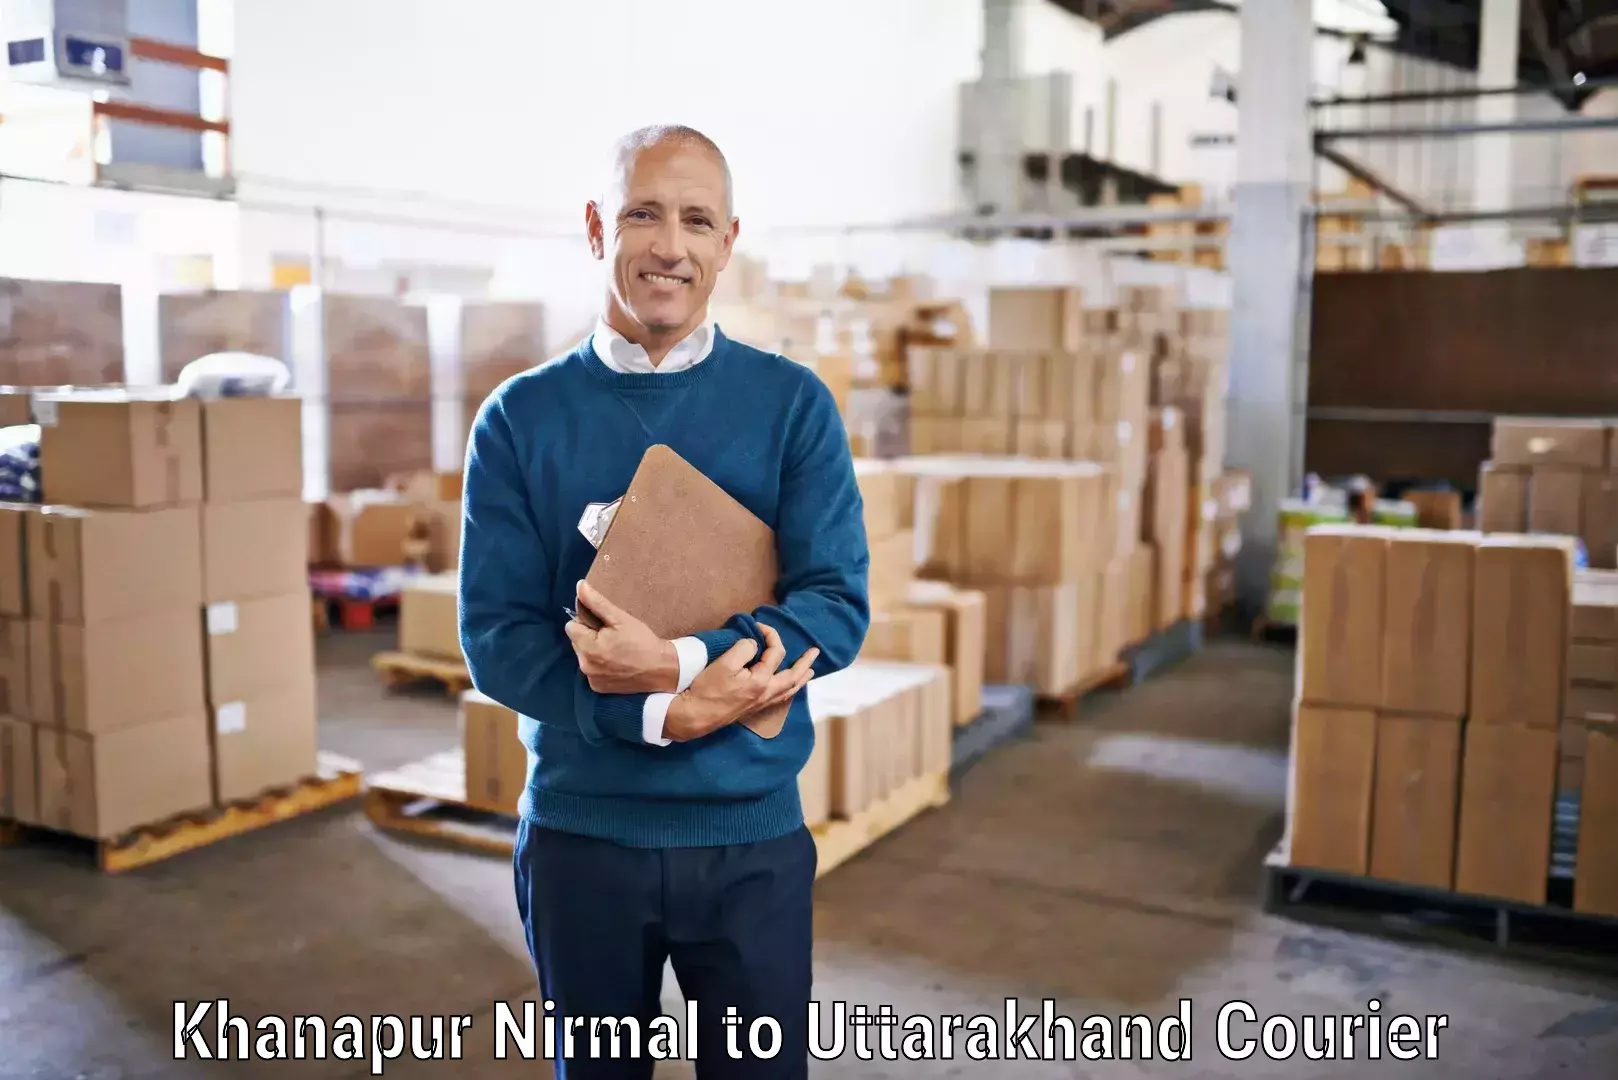 High-priority parcel service Khanapur Nirmal to Kashipur